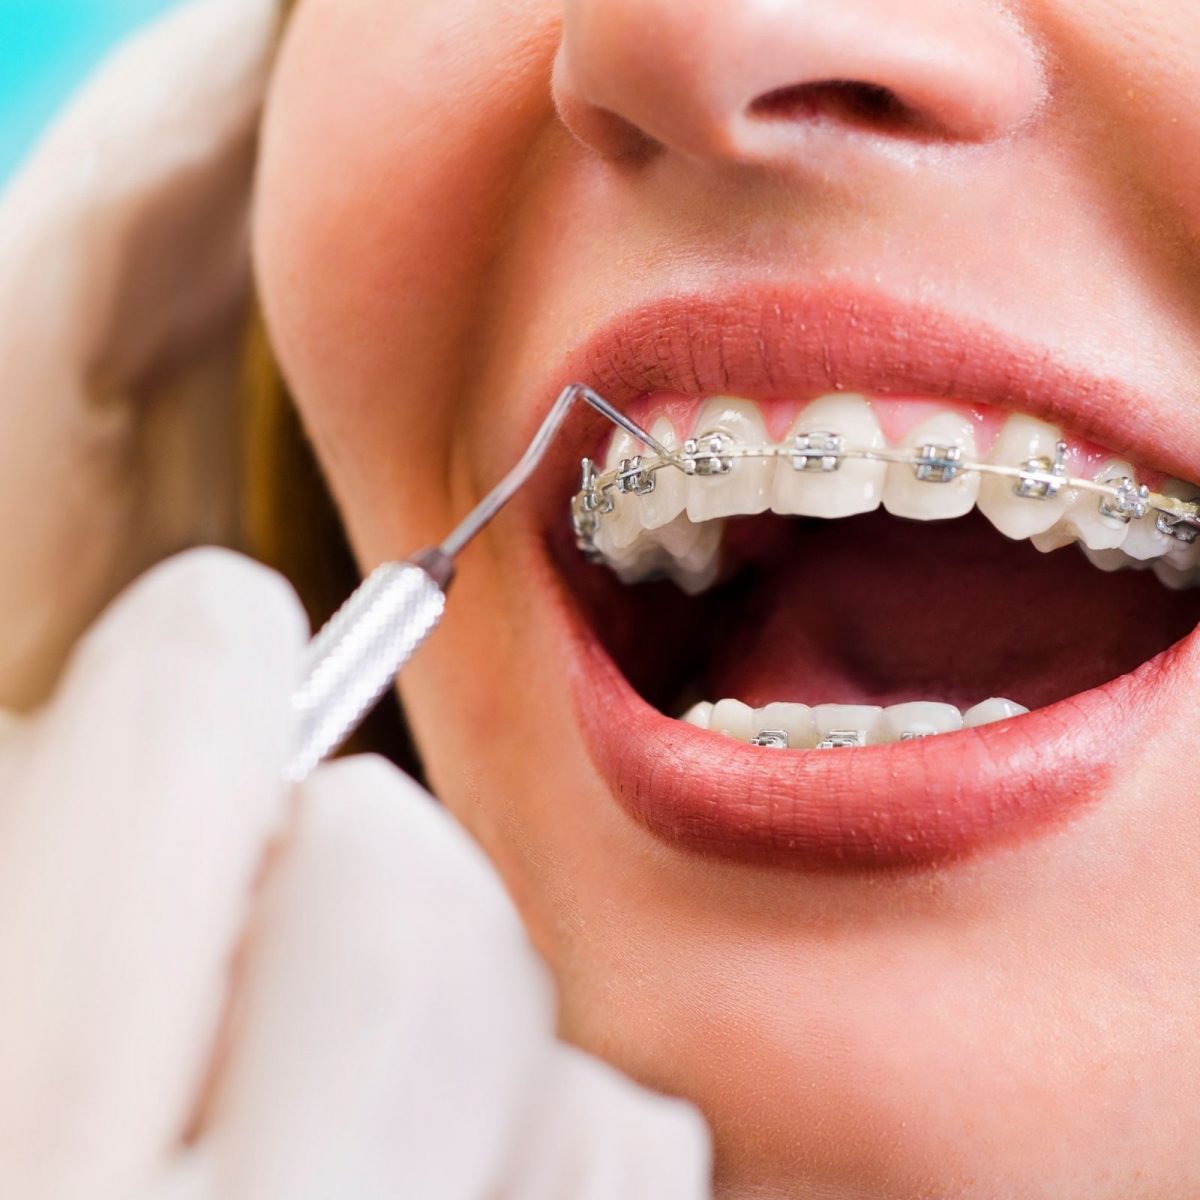 Medicina Dentária - ORTODONTIA (APARELHOS)